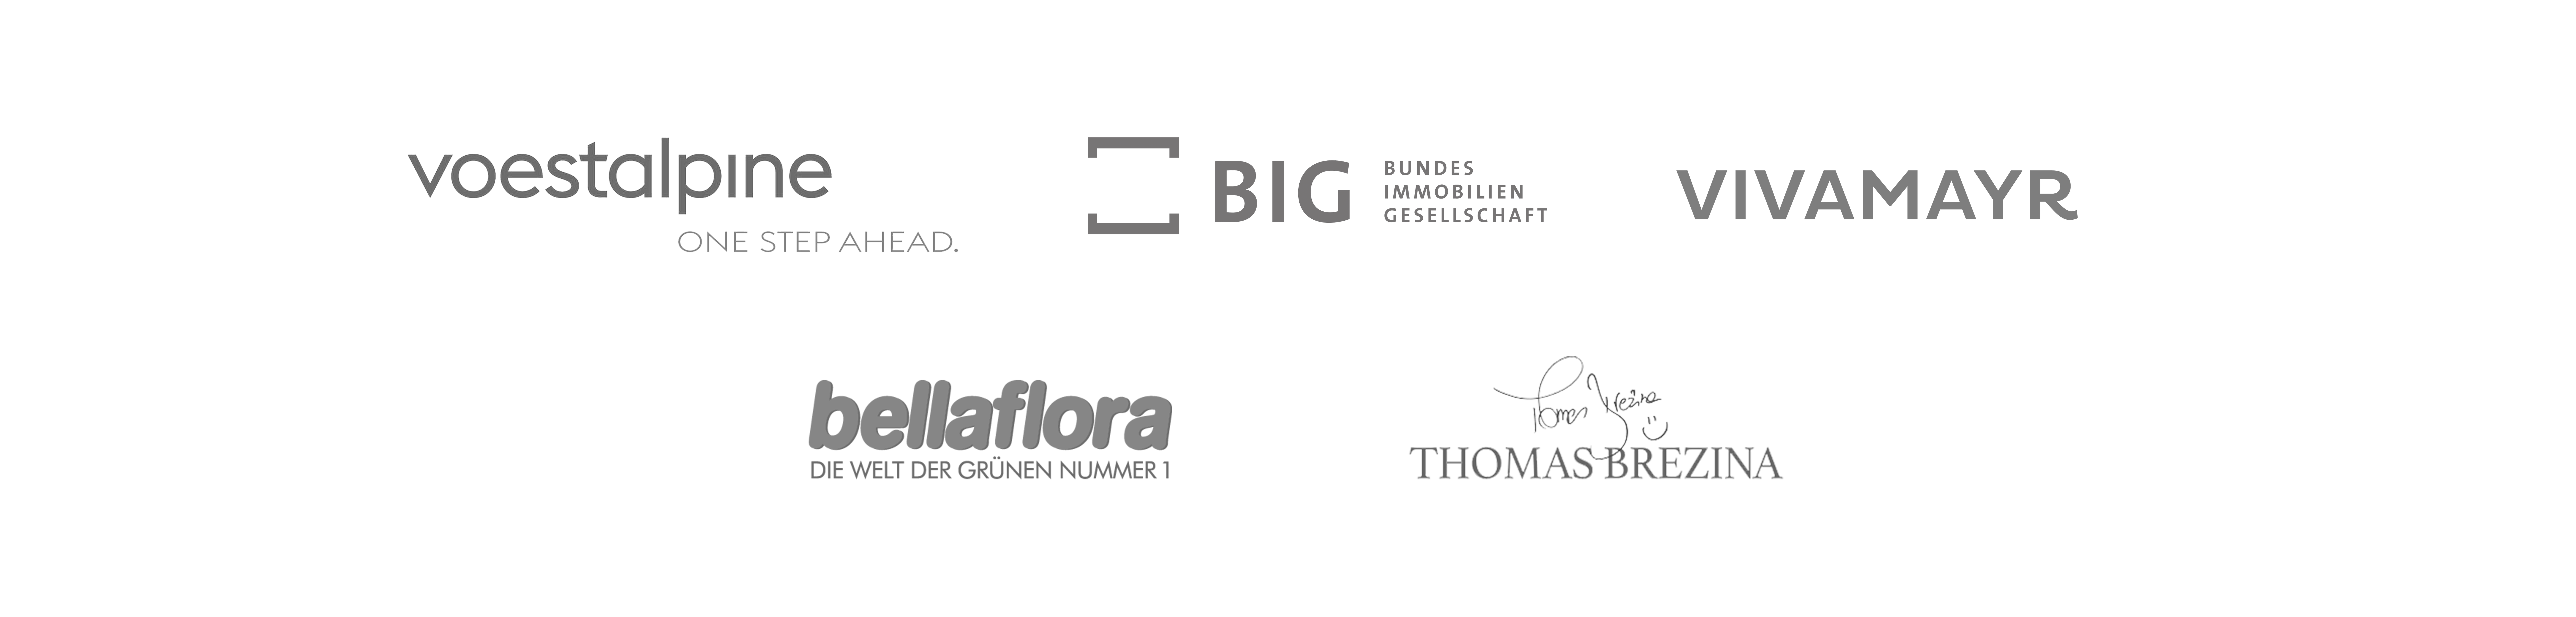 Eine Collage aus fünf Logos: voestalpine, VIVAMAYR, Thomas Brezina, bellaflora und Bundesimmobiliengesellschaft.